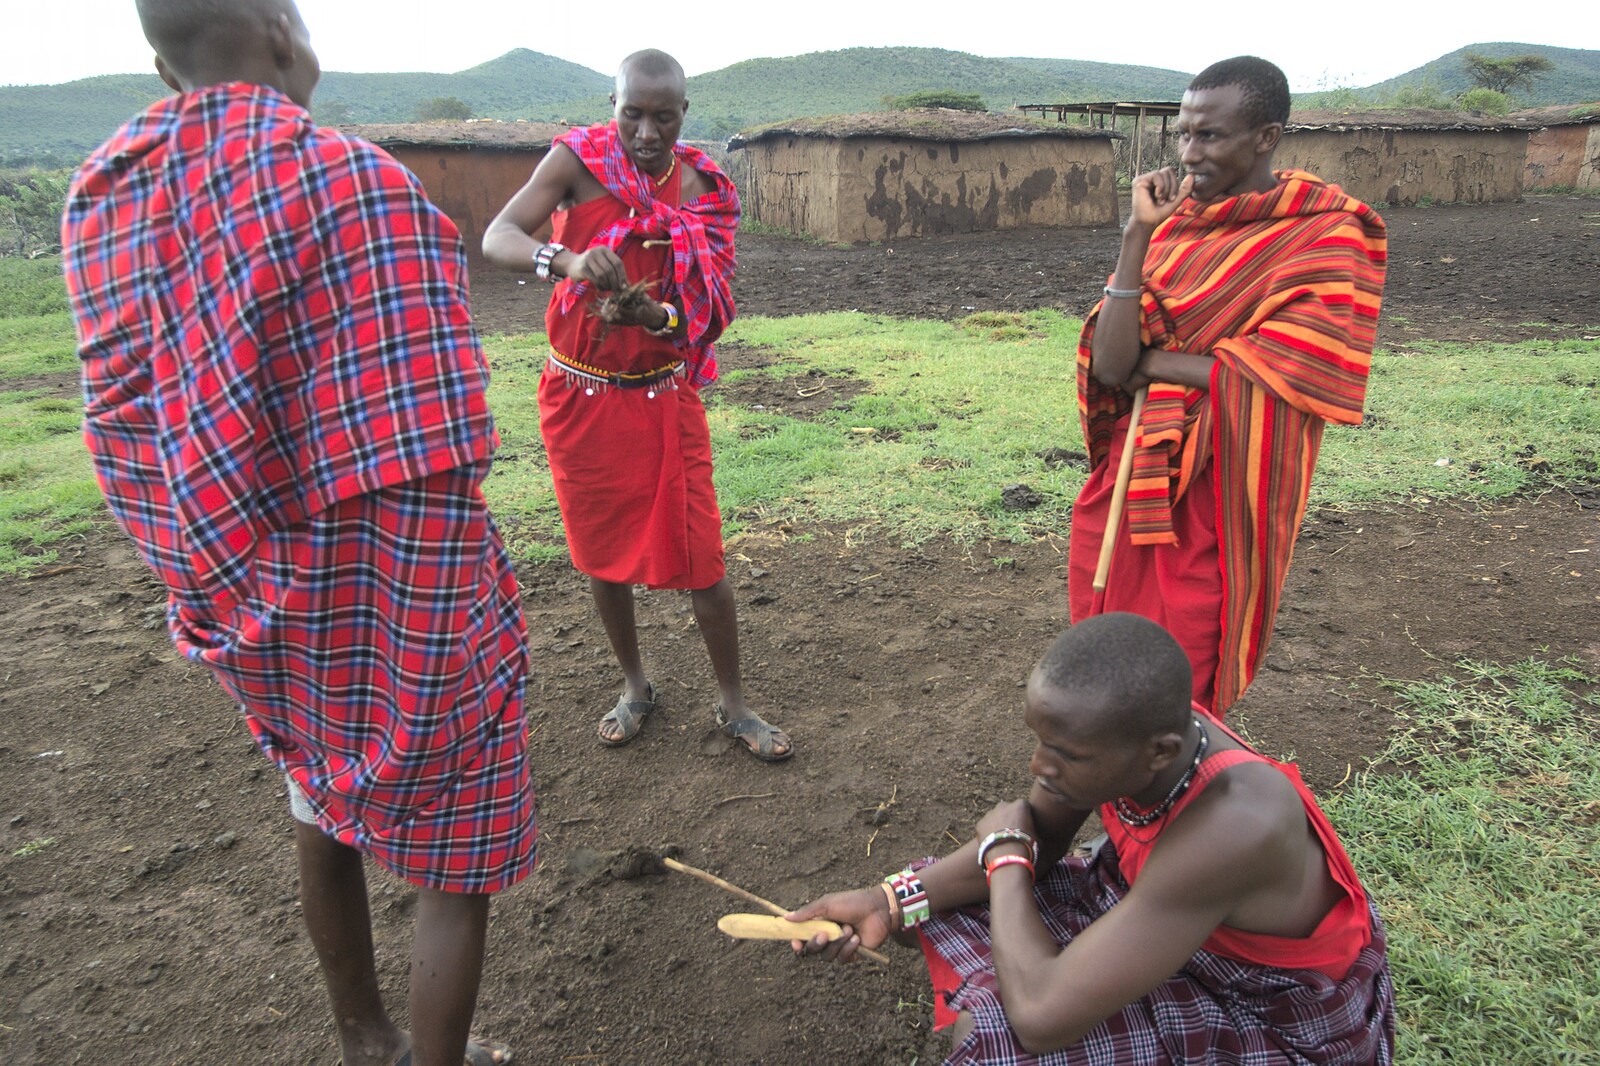 Maasai Mara Safari and a Maasai Village, Ololaimutia, Kenya - 5th November 2010: The bushcraft skill of friction firelighting